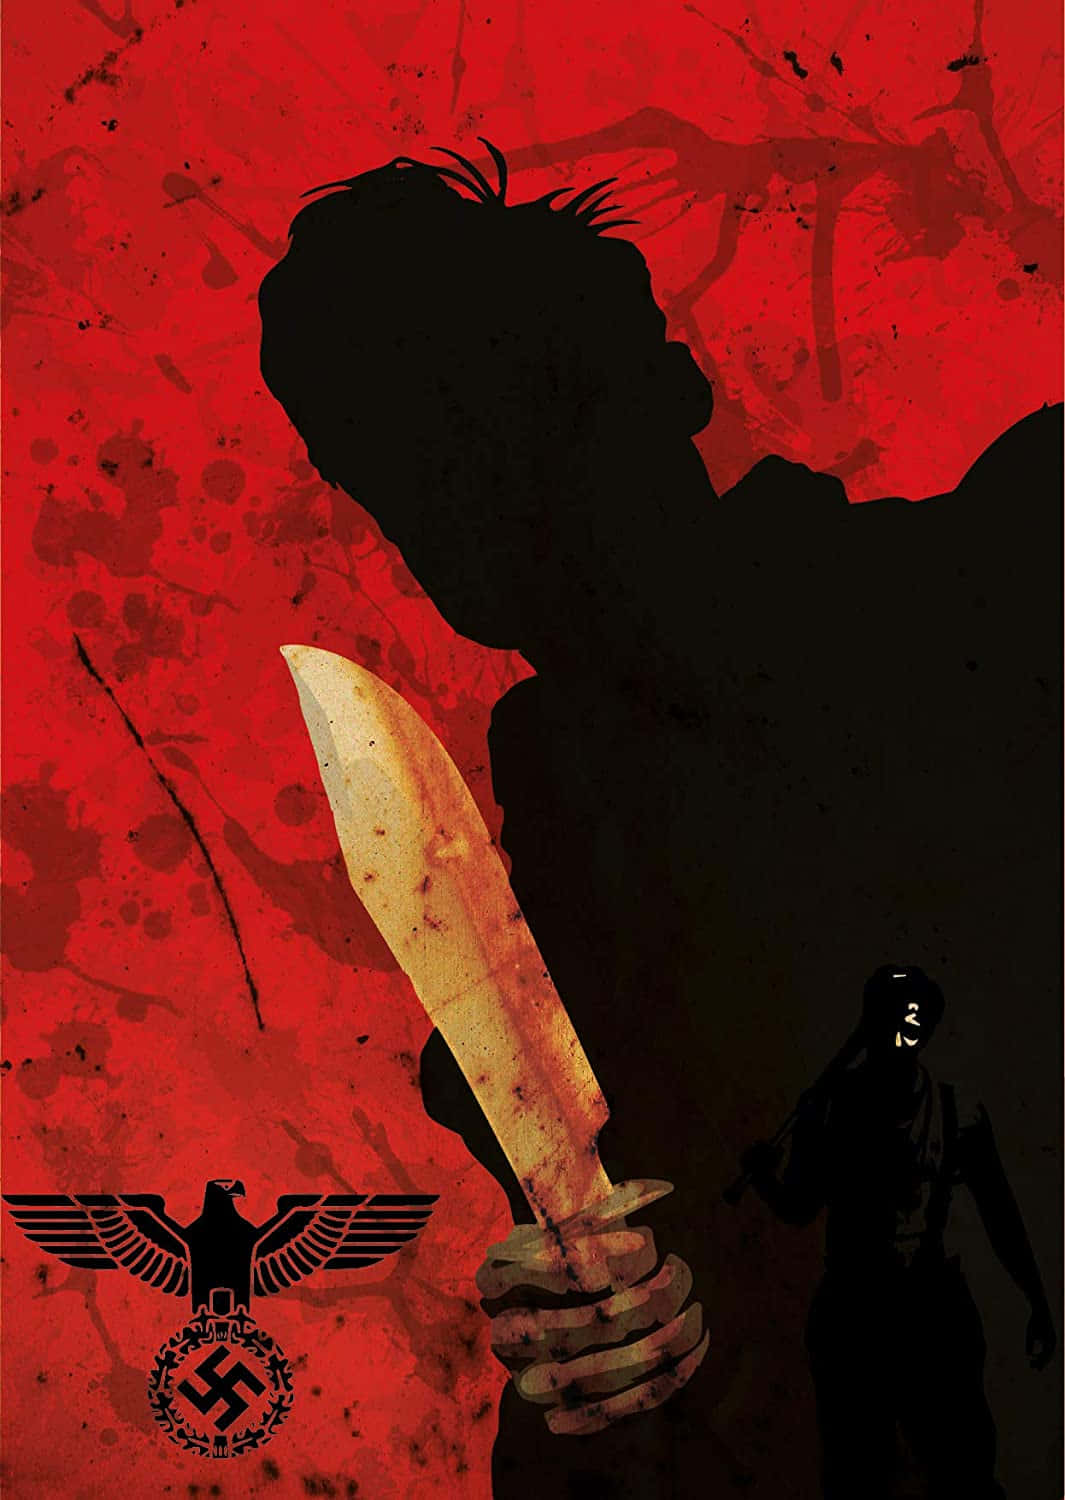 Tarantino Inspired Red Silhouette Artwork Wallpaper